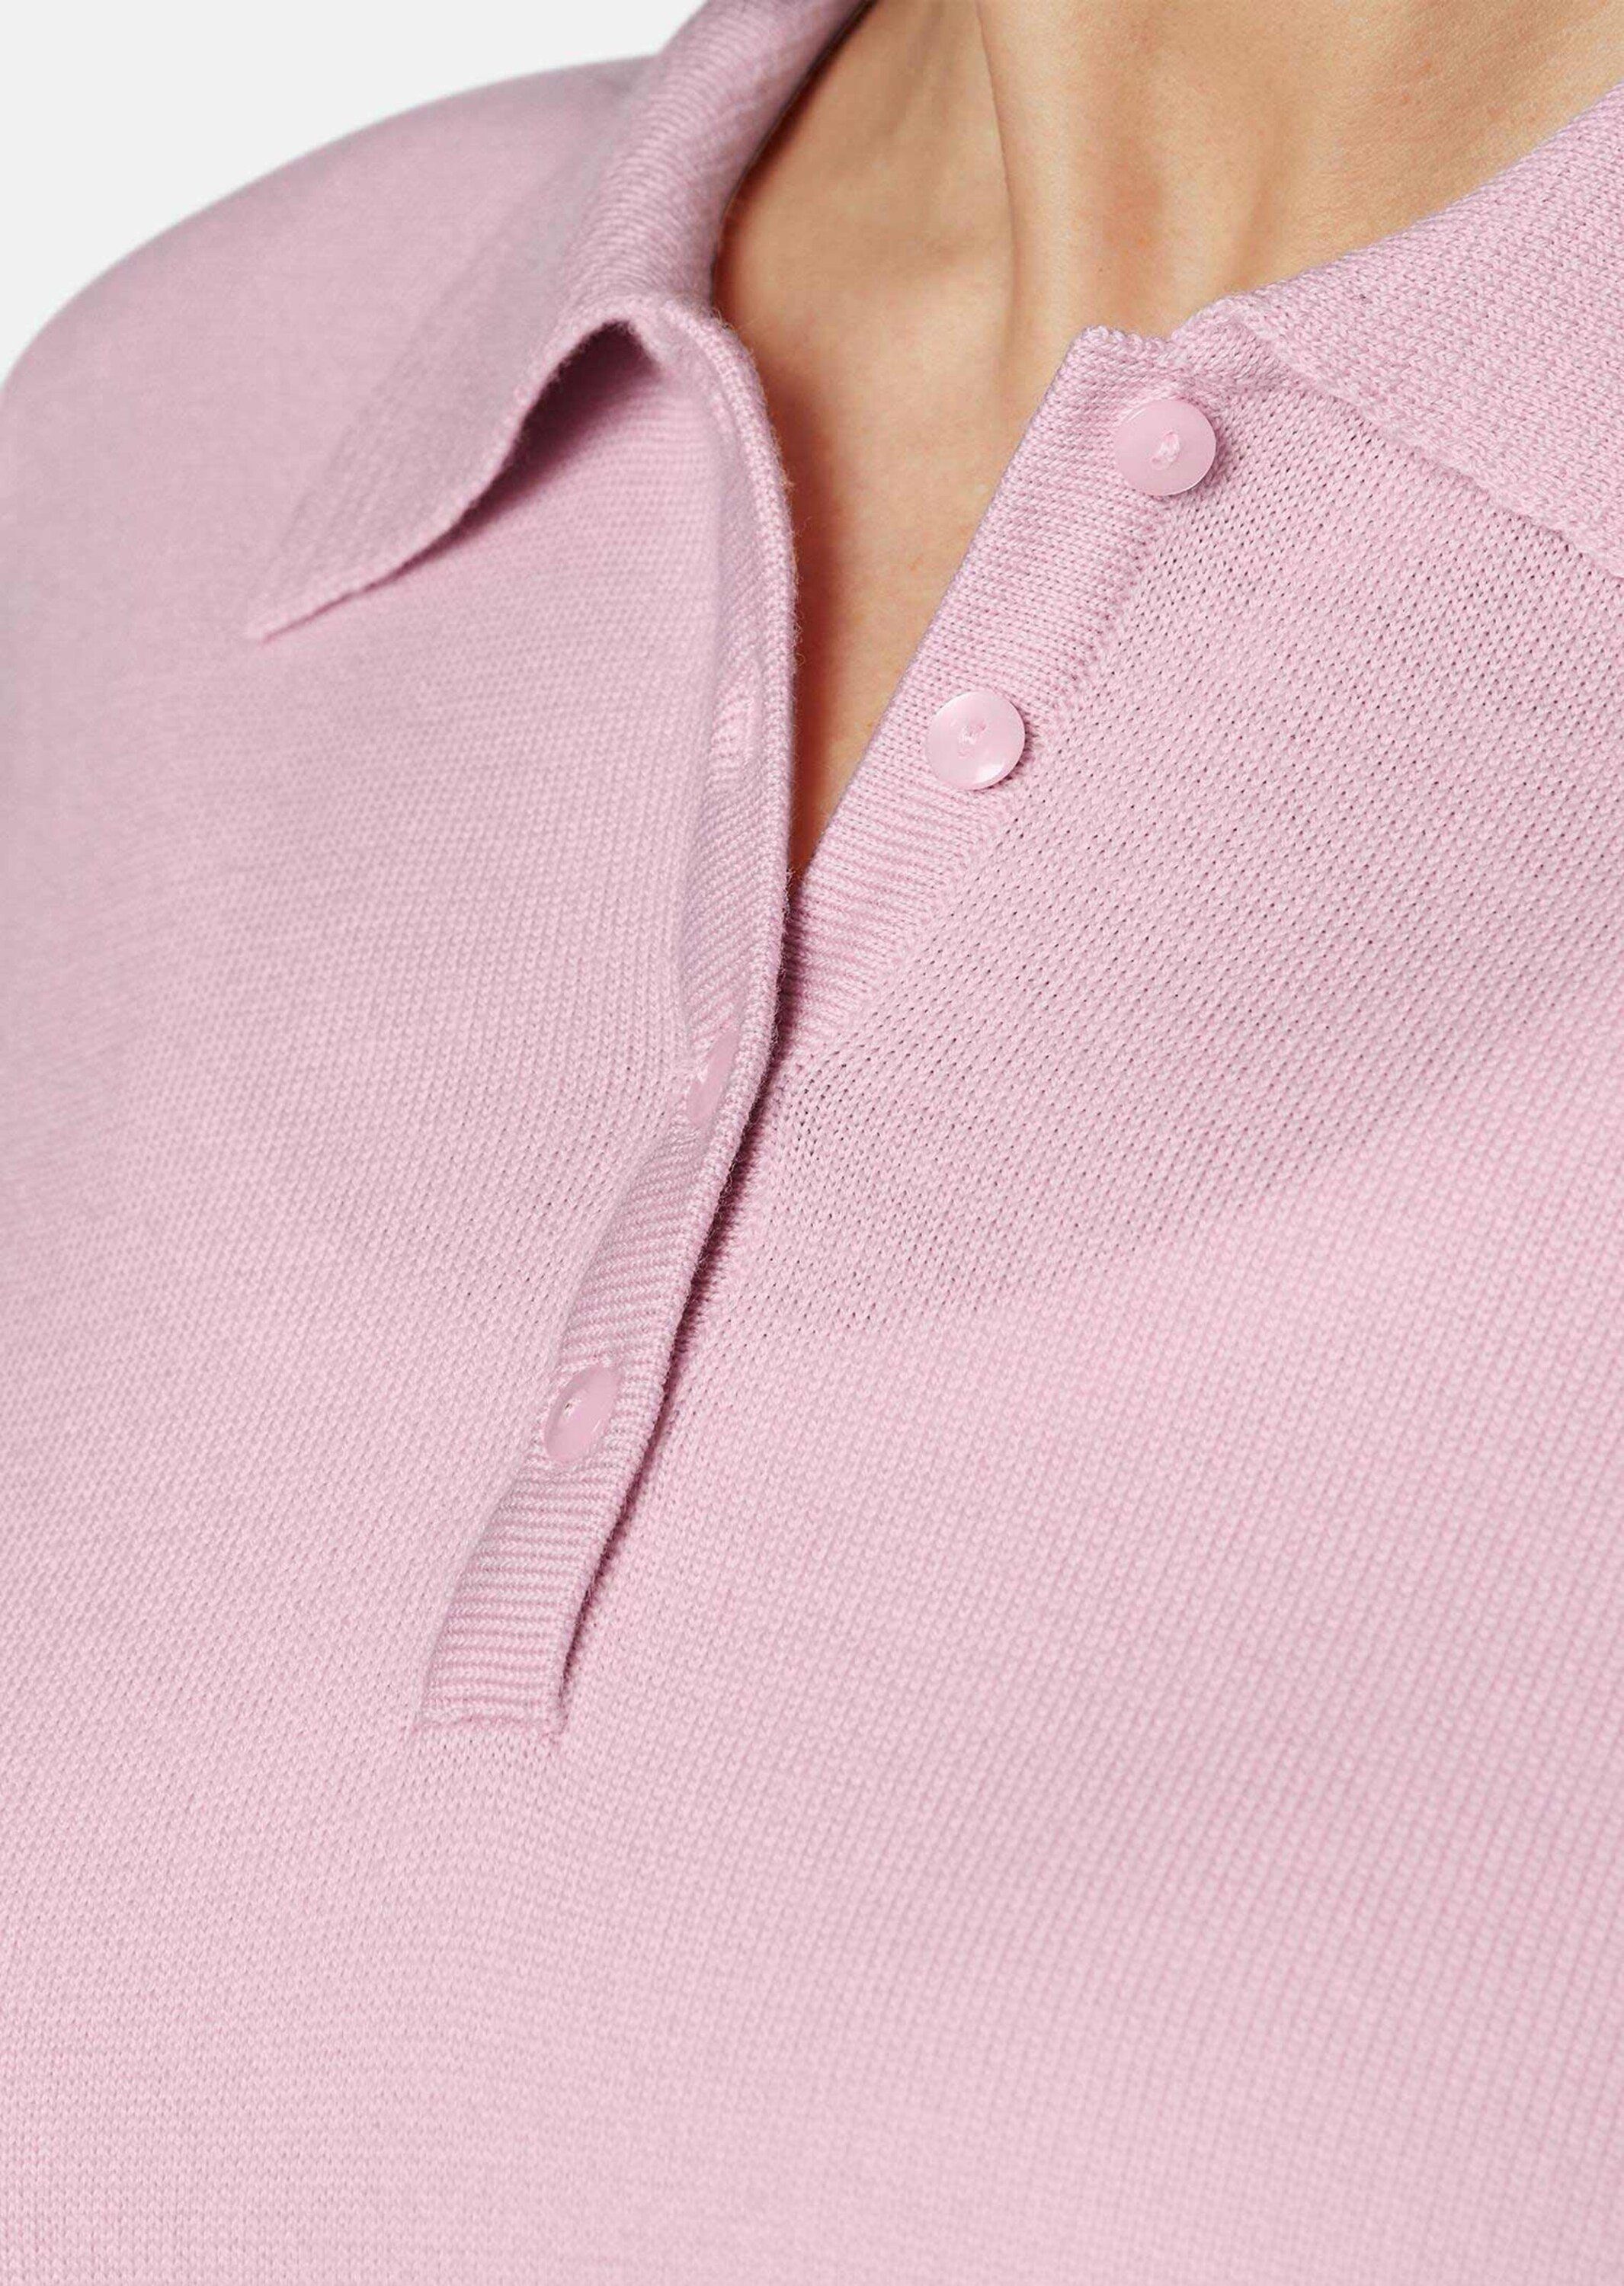 rosa Pullover hochwertiger in Qualität Strickpullover GOLDNER Kurzgröße: